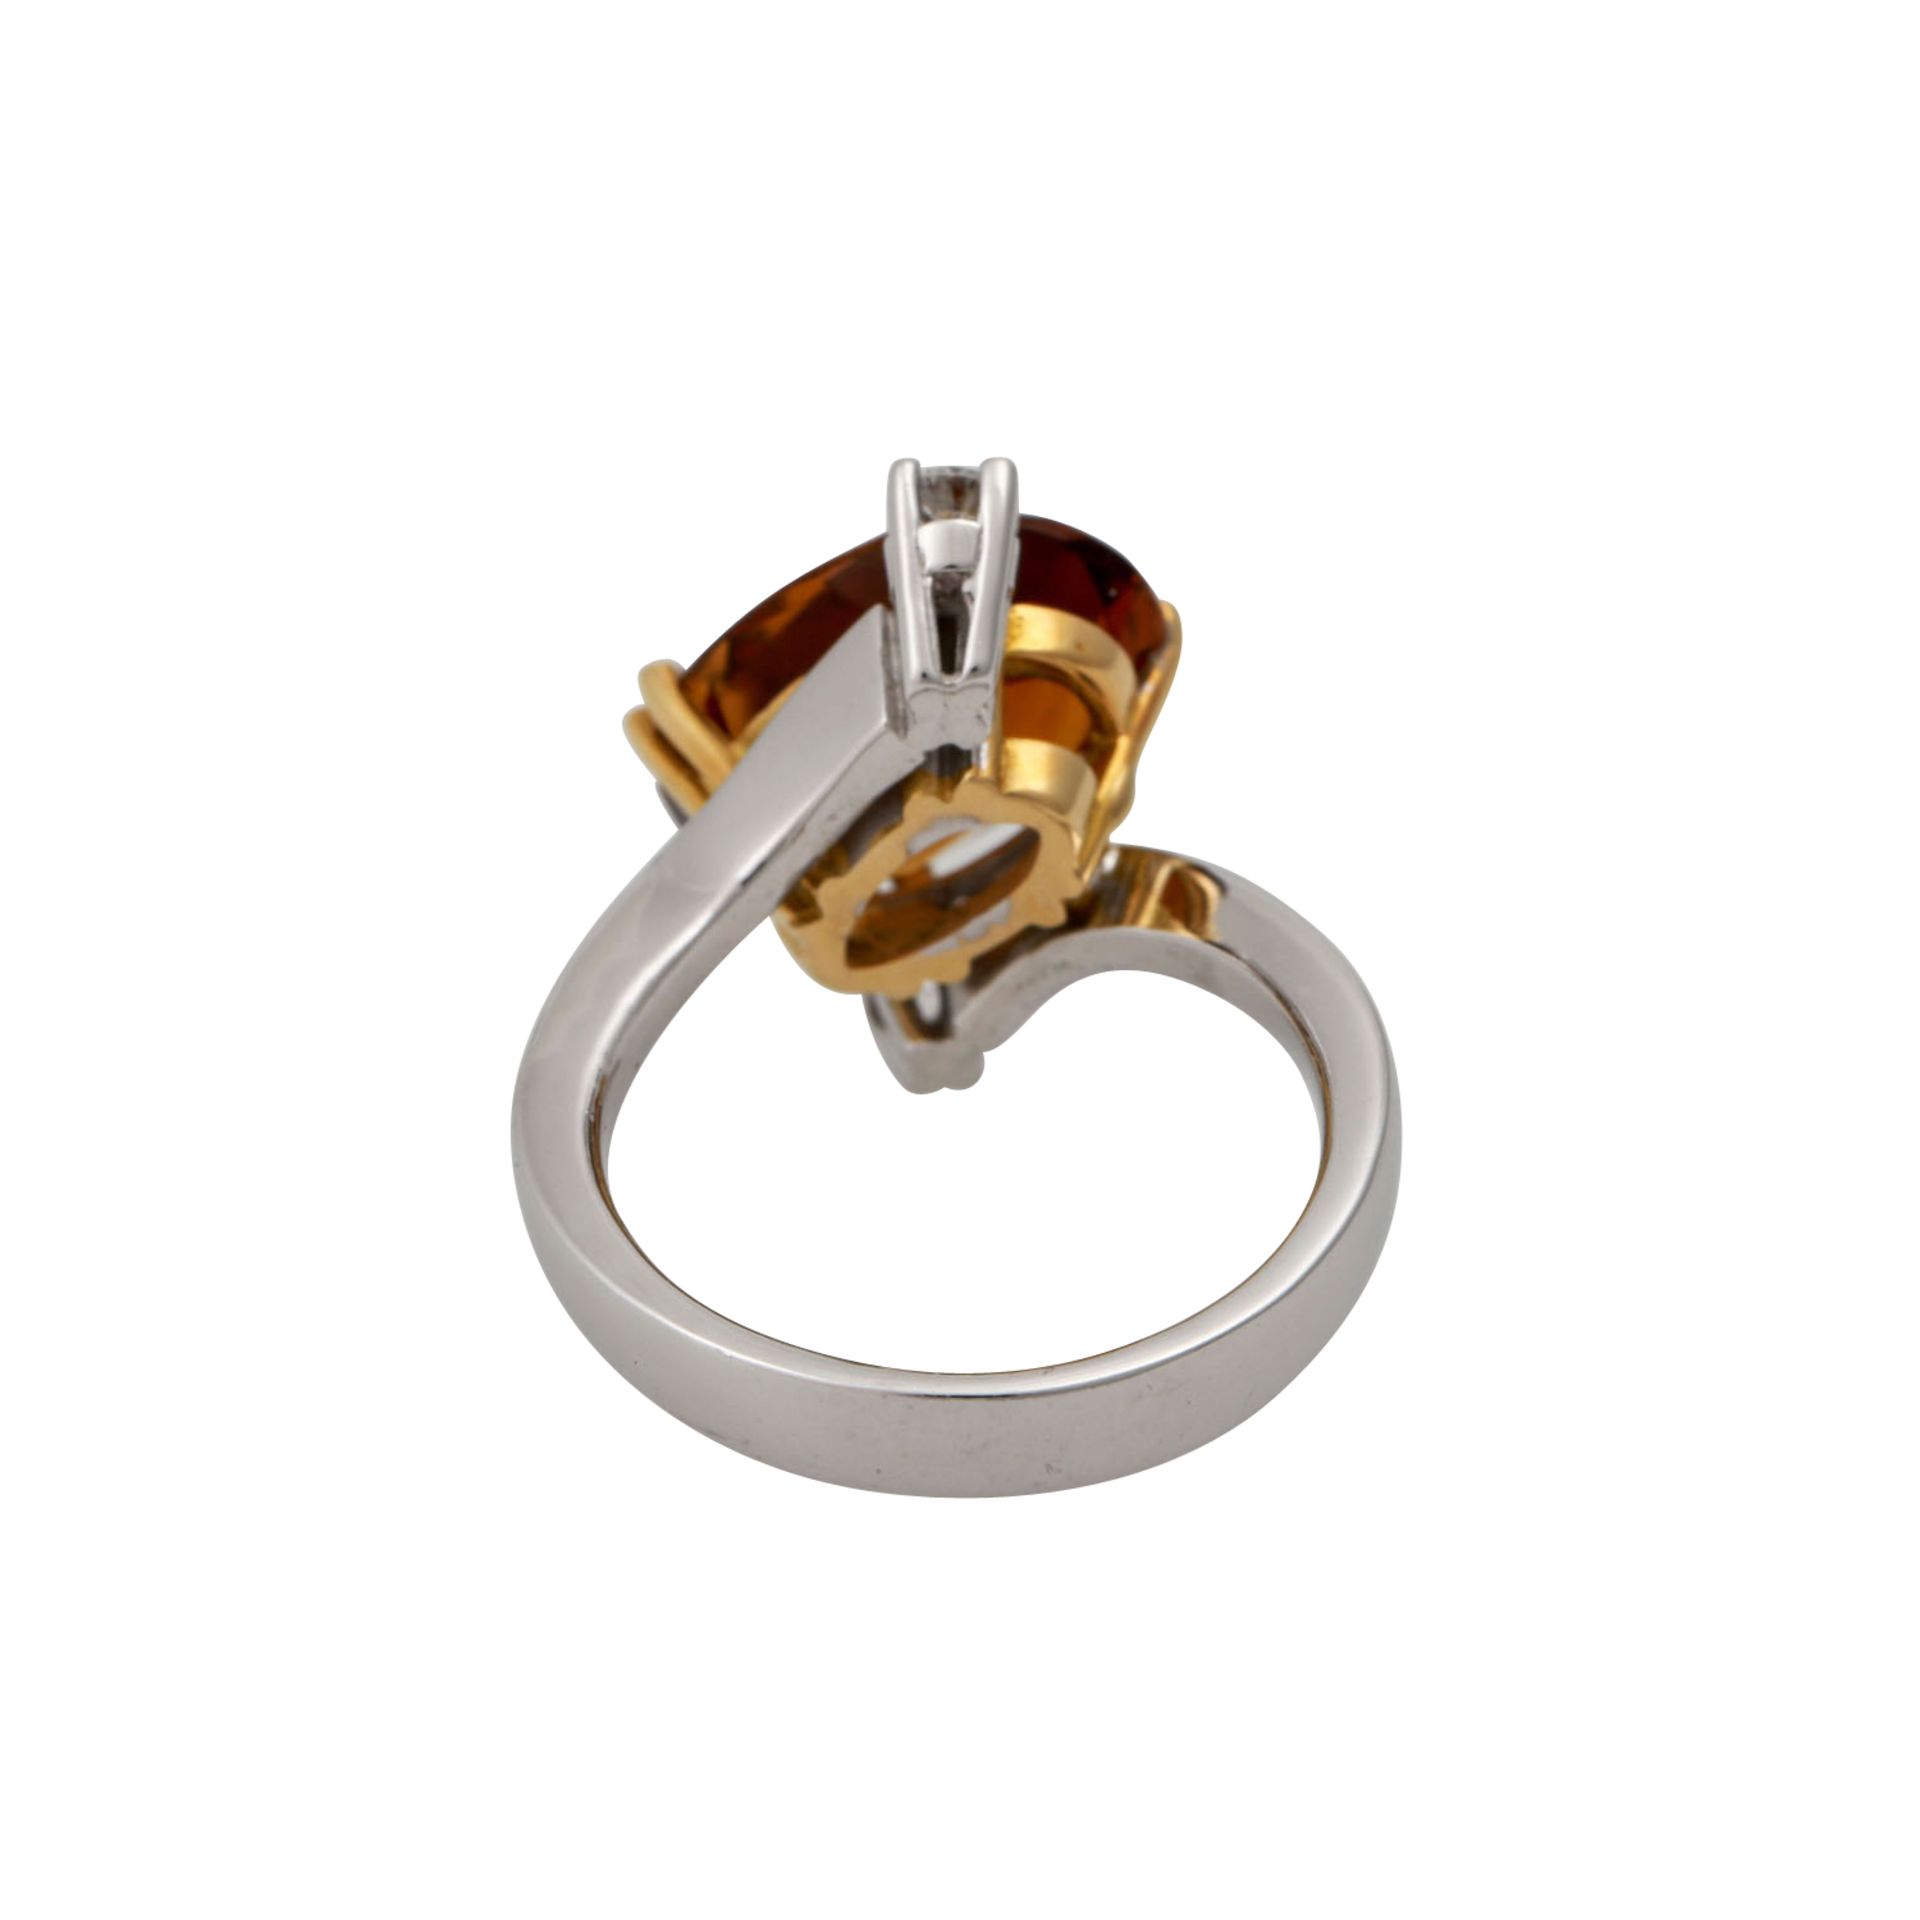 Ring mit oval facettiertem Citrin und 2 Brillanten, zus. ca. 0,18 ct,NP: 1.820 €, GG/WG 18K, 8,9 - Bild 4 aus 4